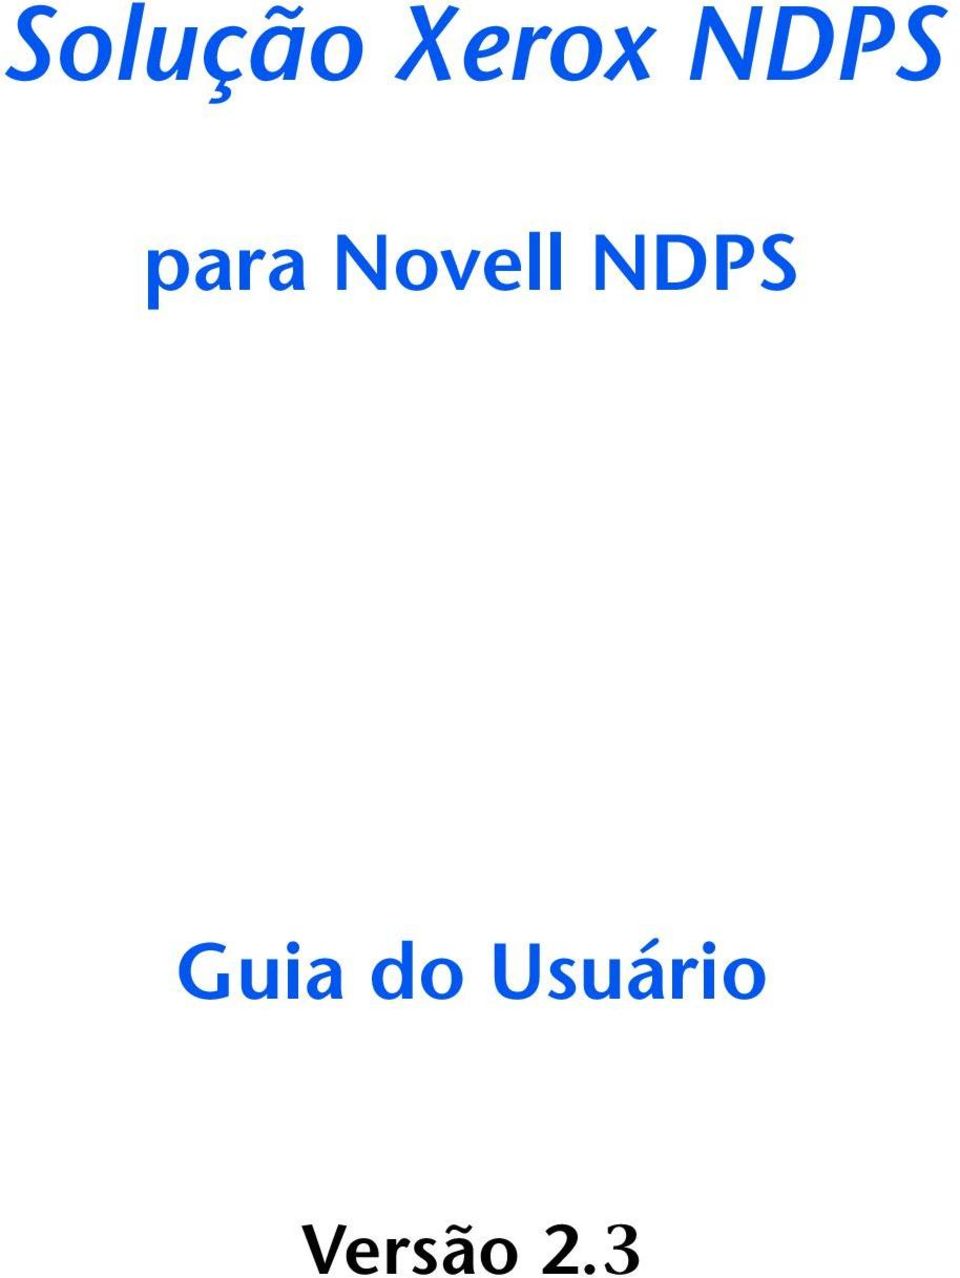 Novell NDPS